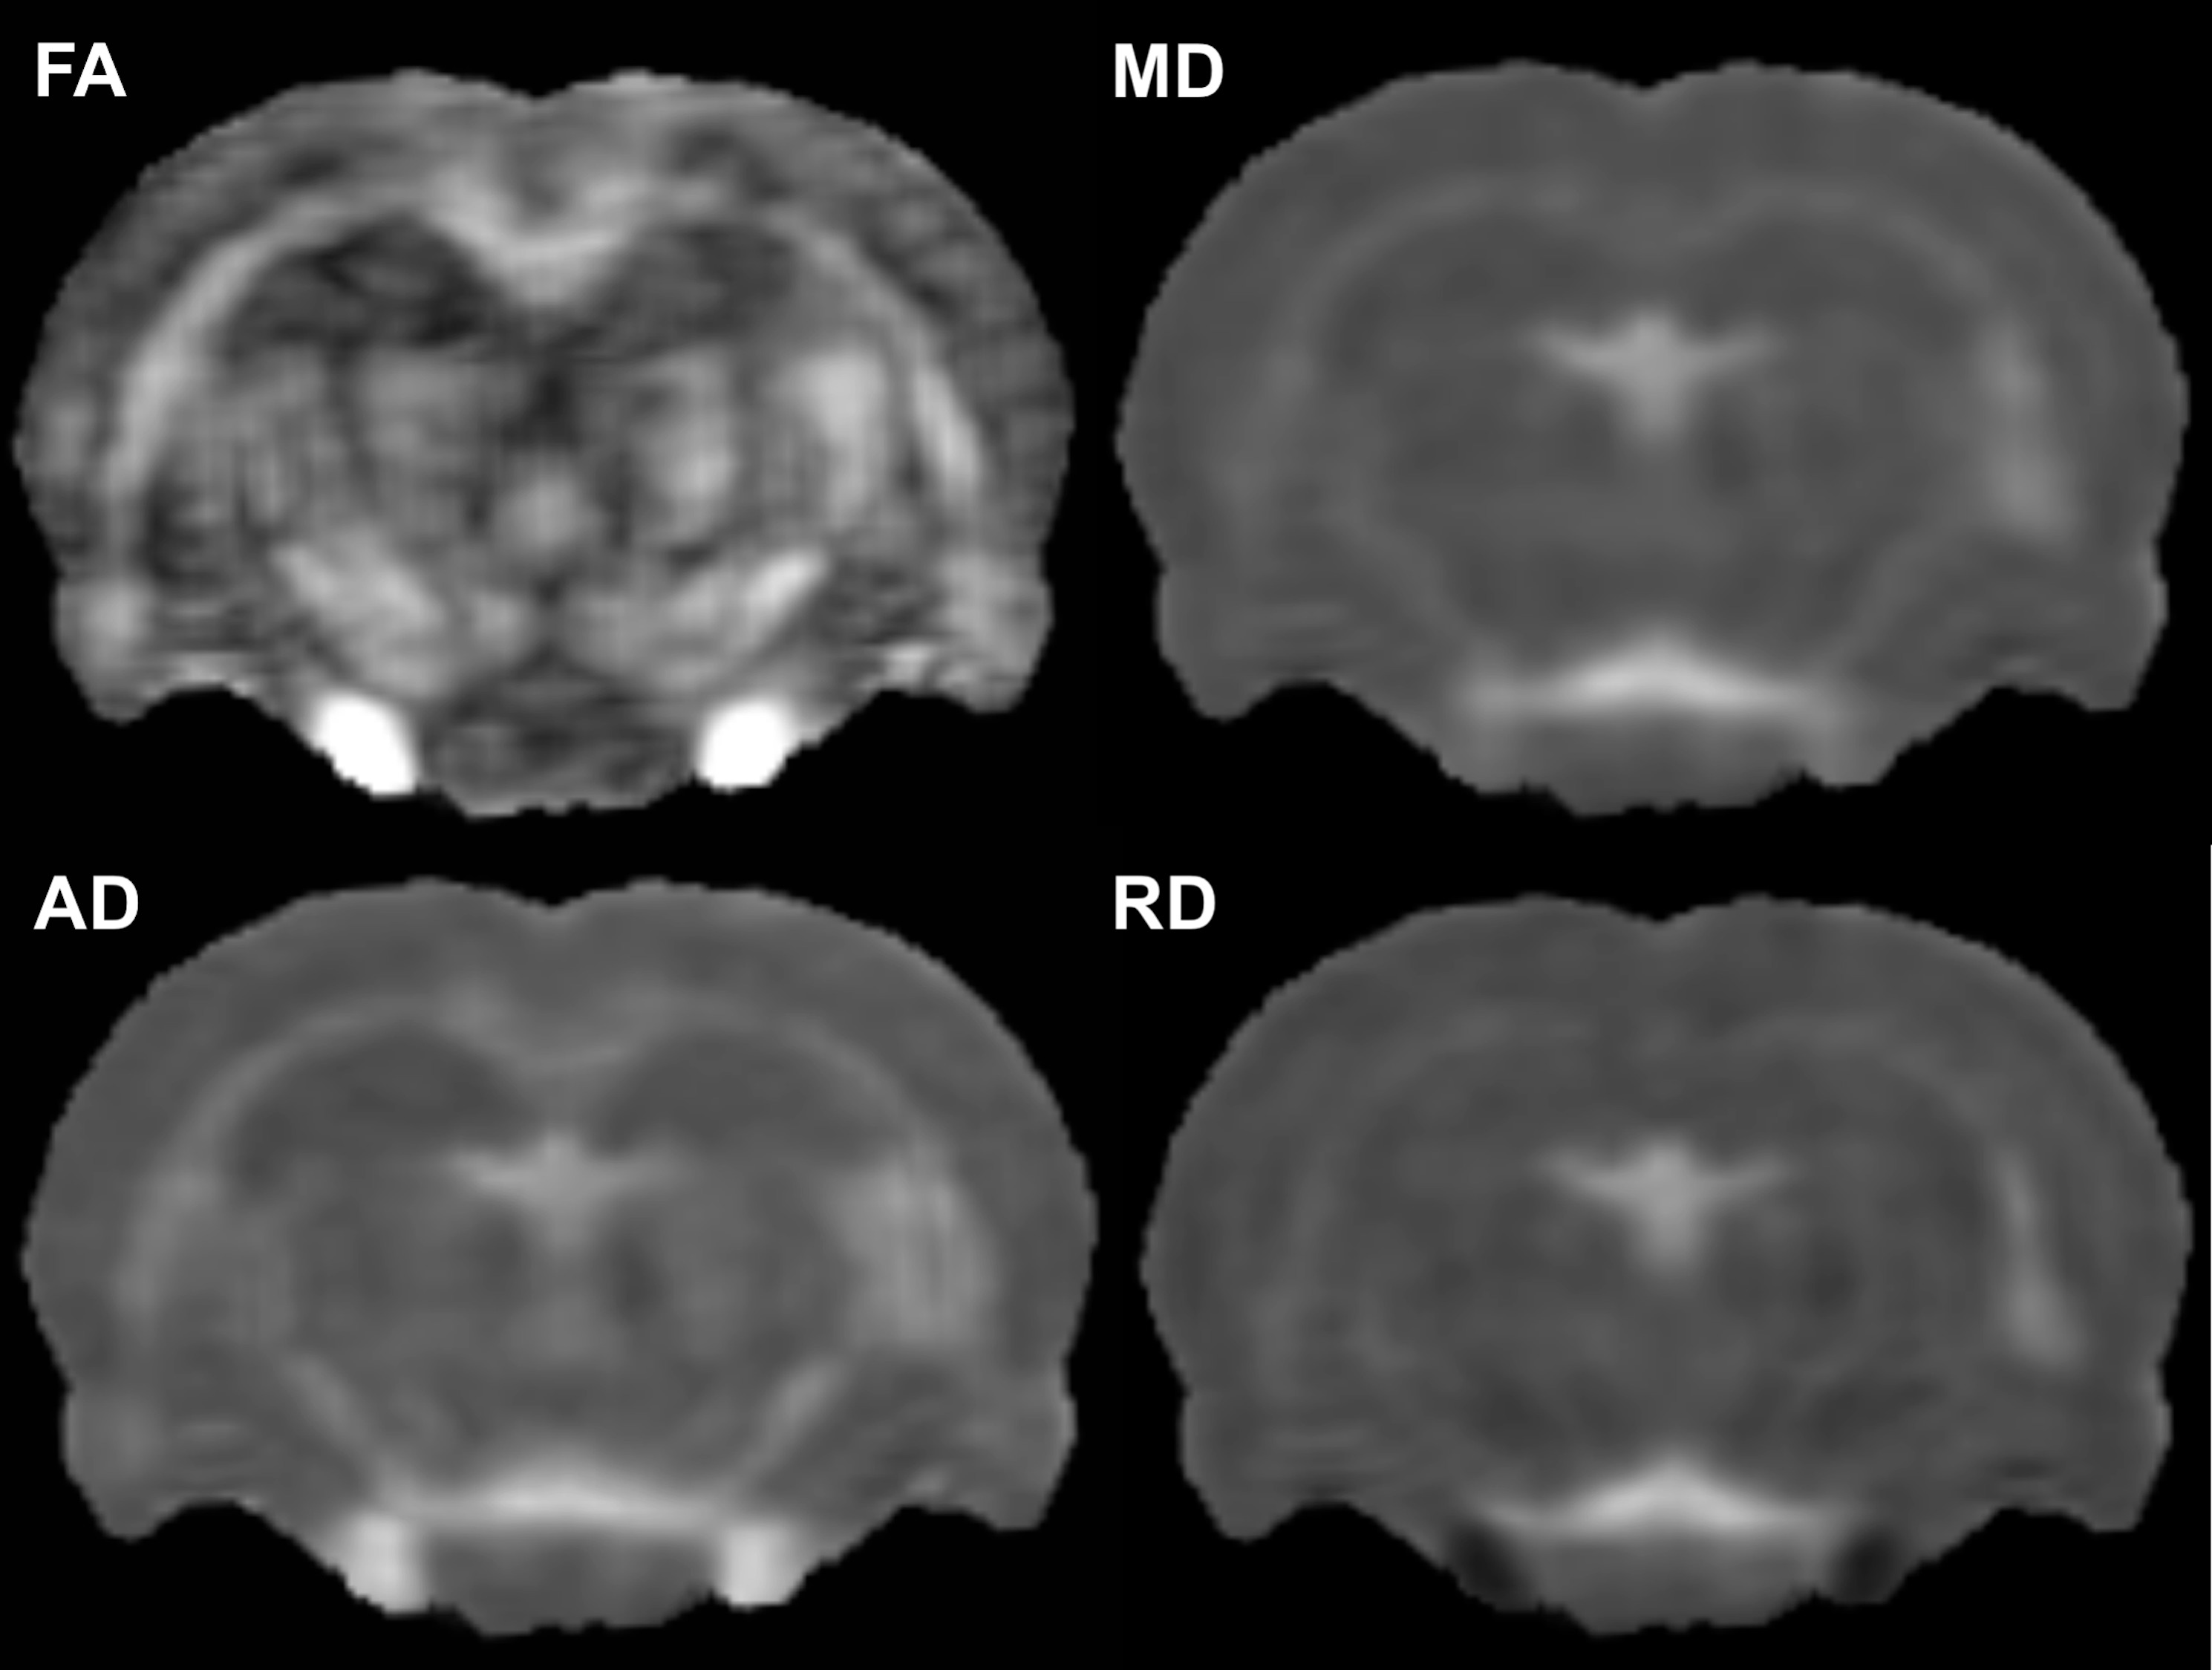 Observation d'images obtenues en Imagerie par Résonance Magnétique (IRM)  sur la console d'acquisitio